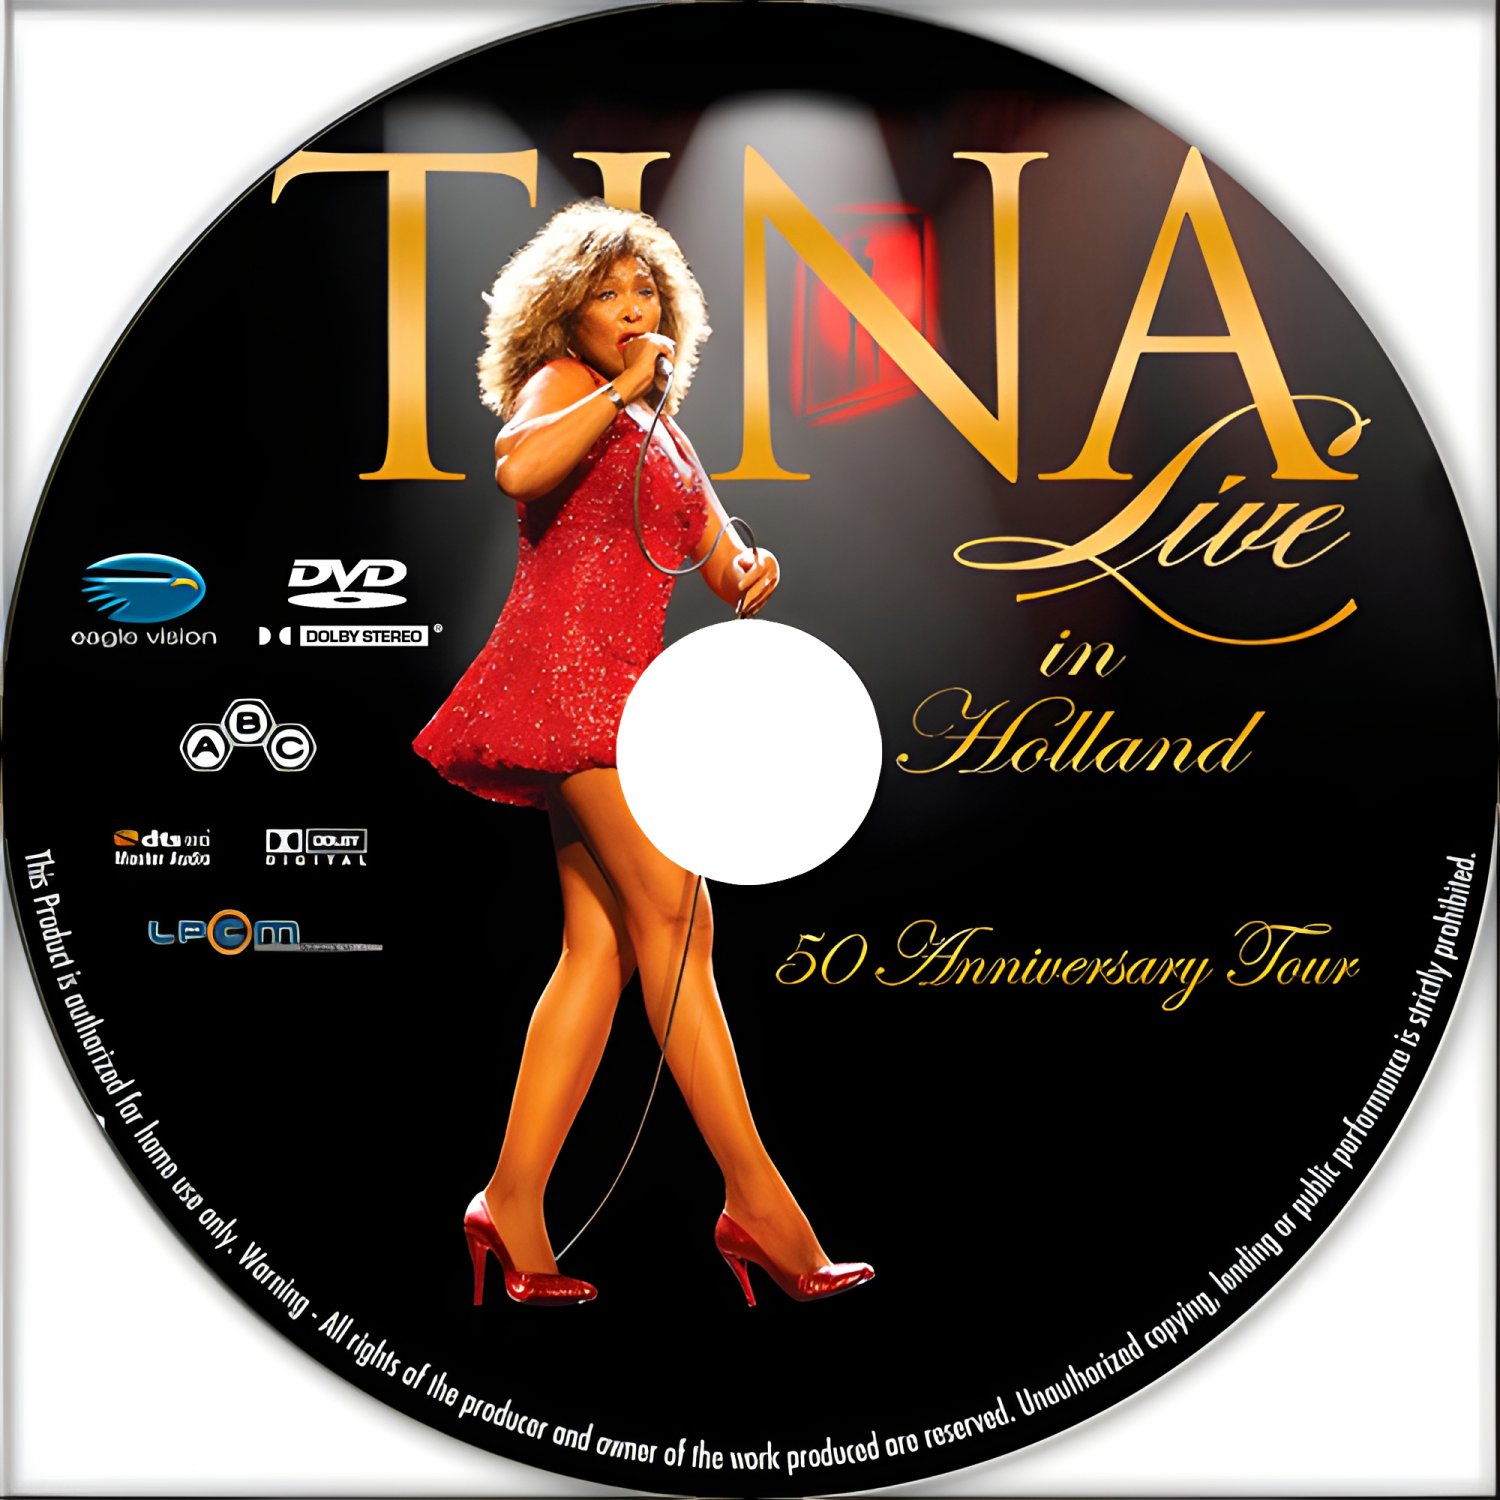 Tina Turner - Tina! 50th Anniversary Tour Holland (Live) 2009 (1 DVD)